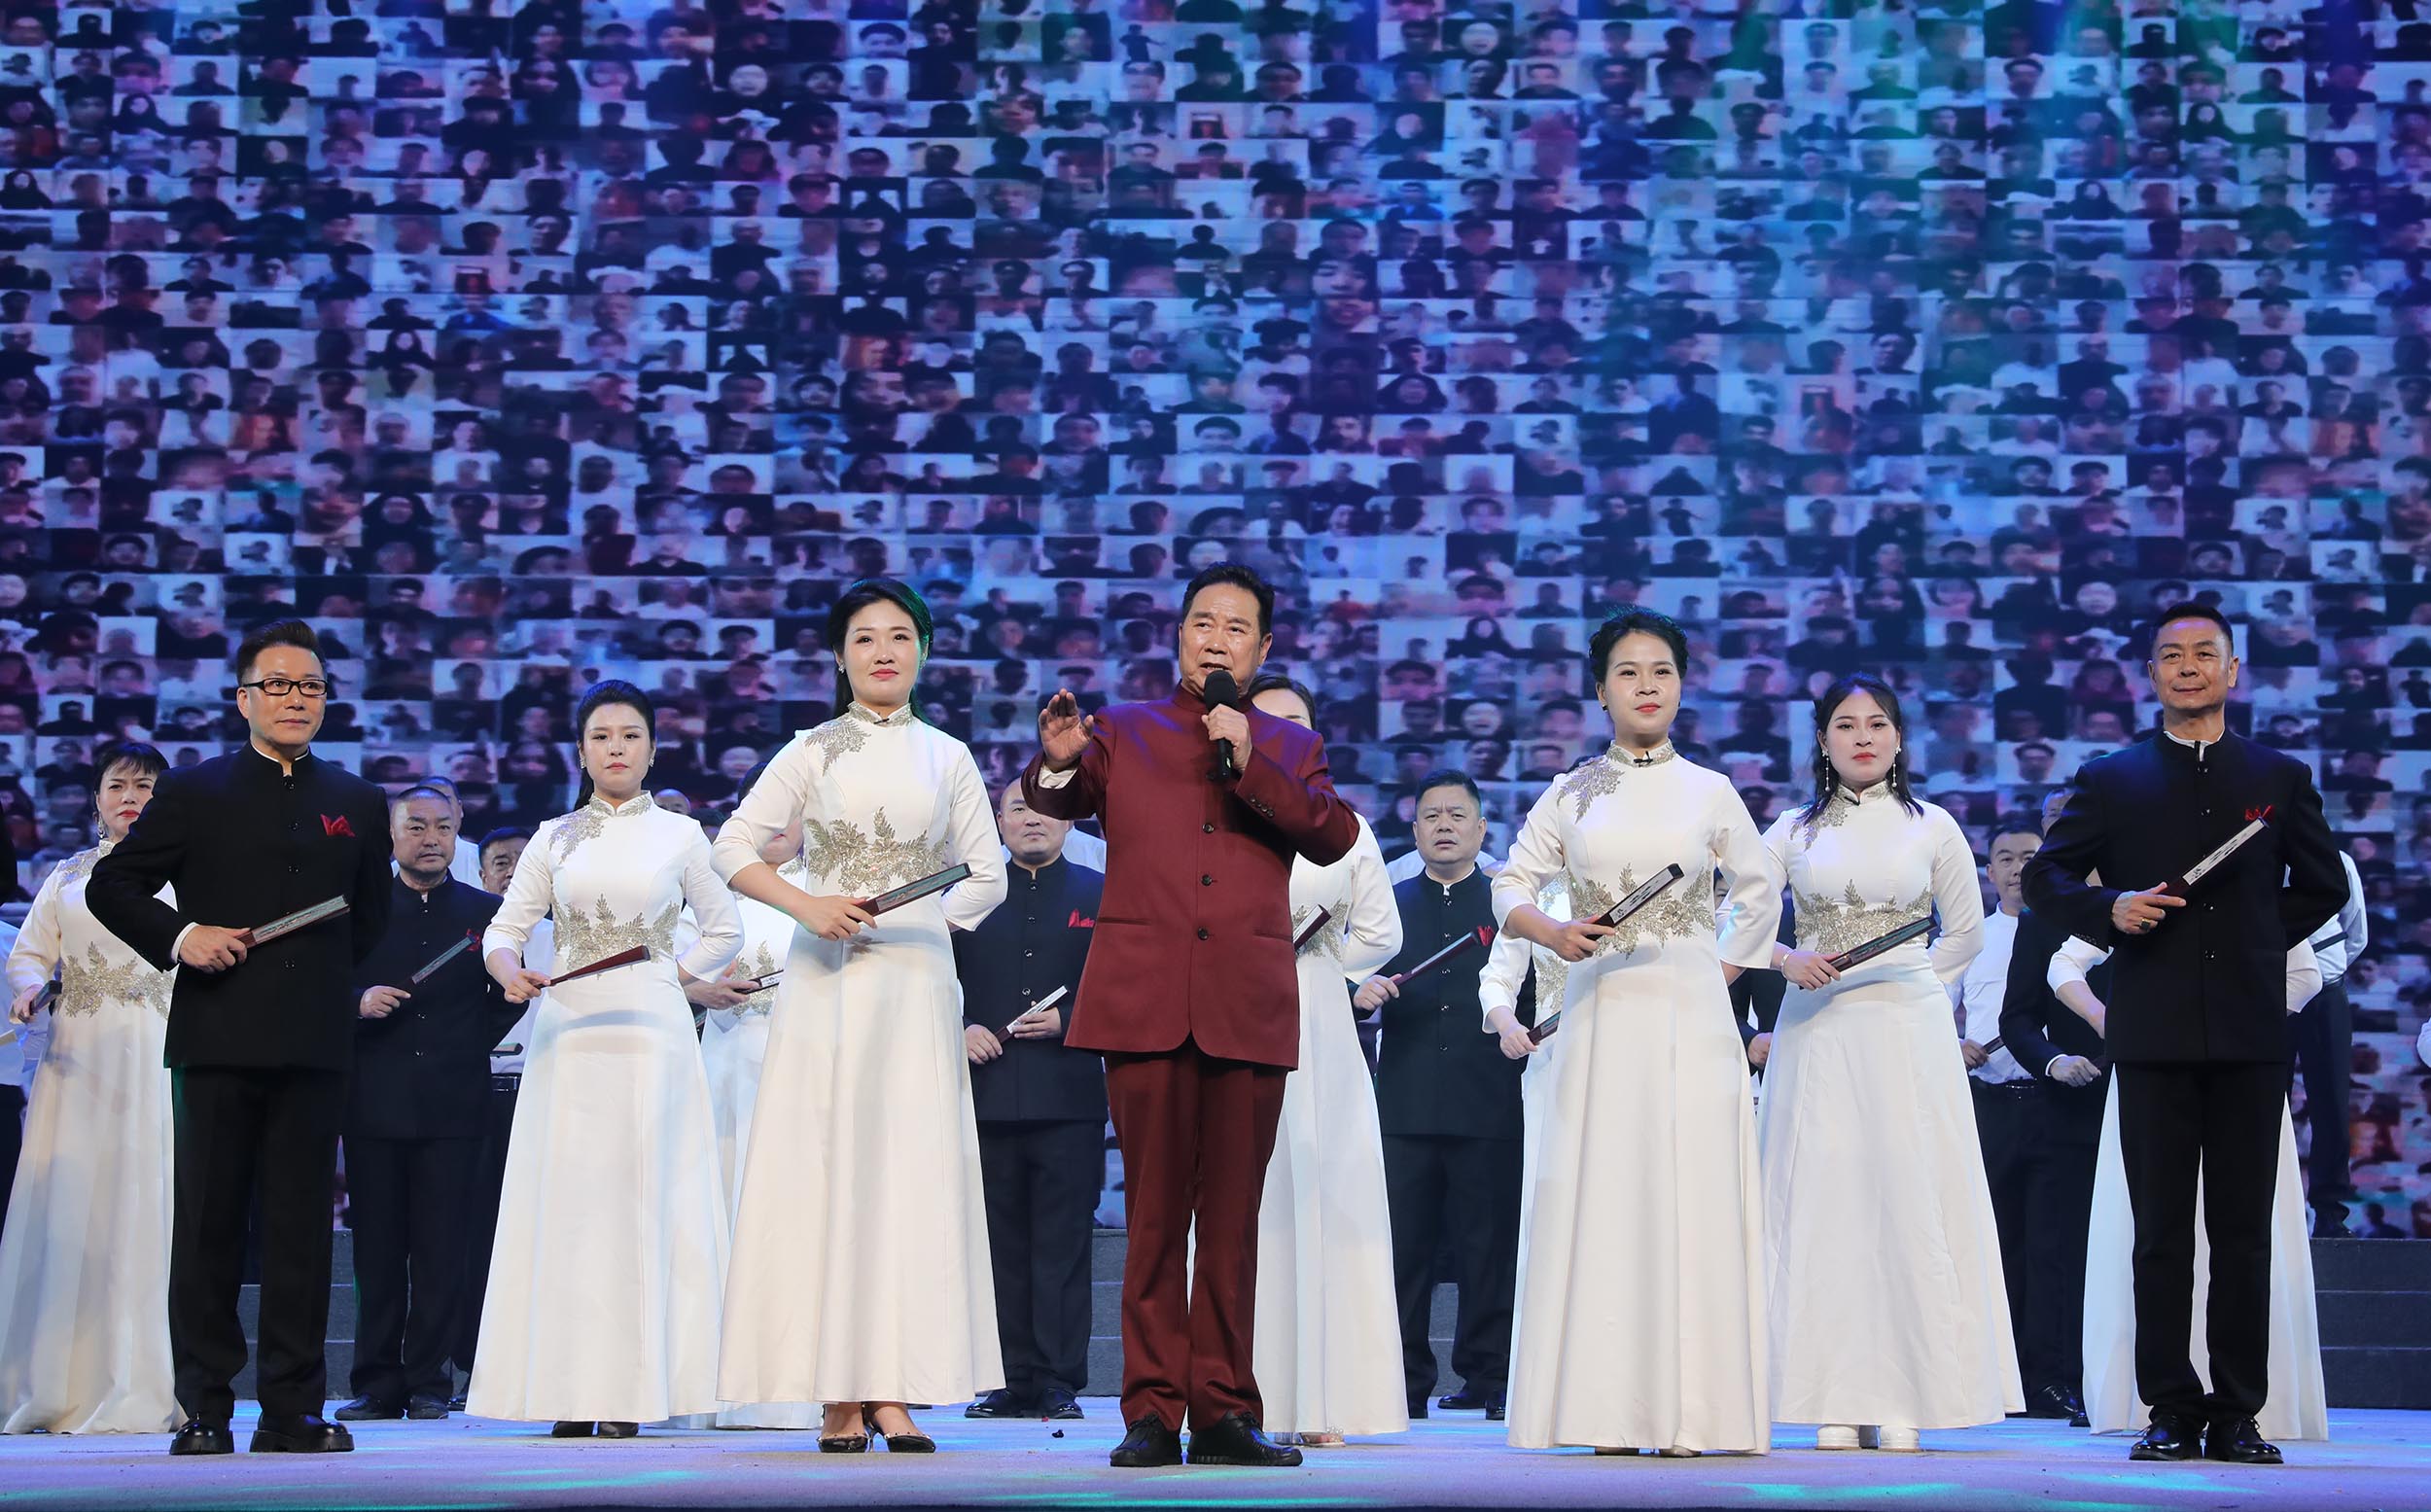 李樹建弟子公益展演周揭幕 為民演戲獻戲曲盛宴